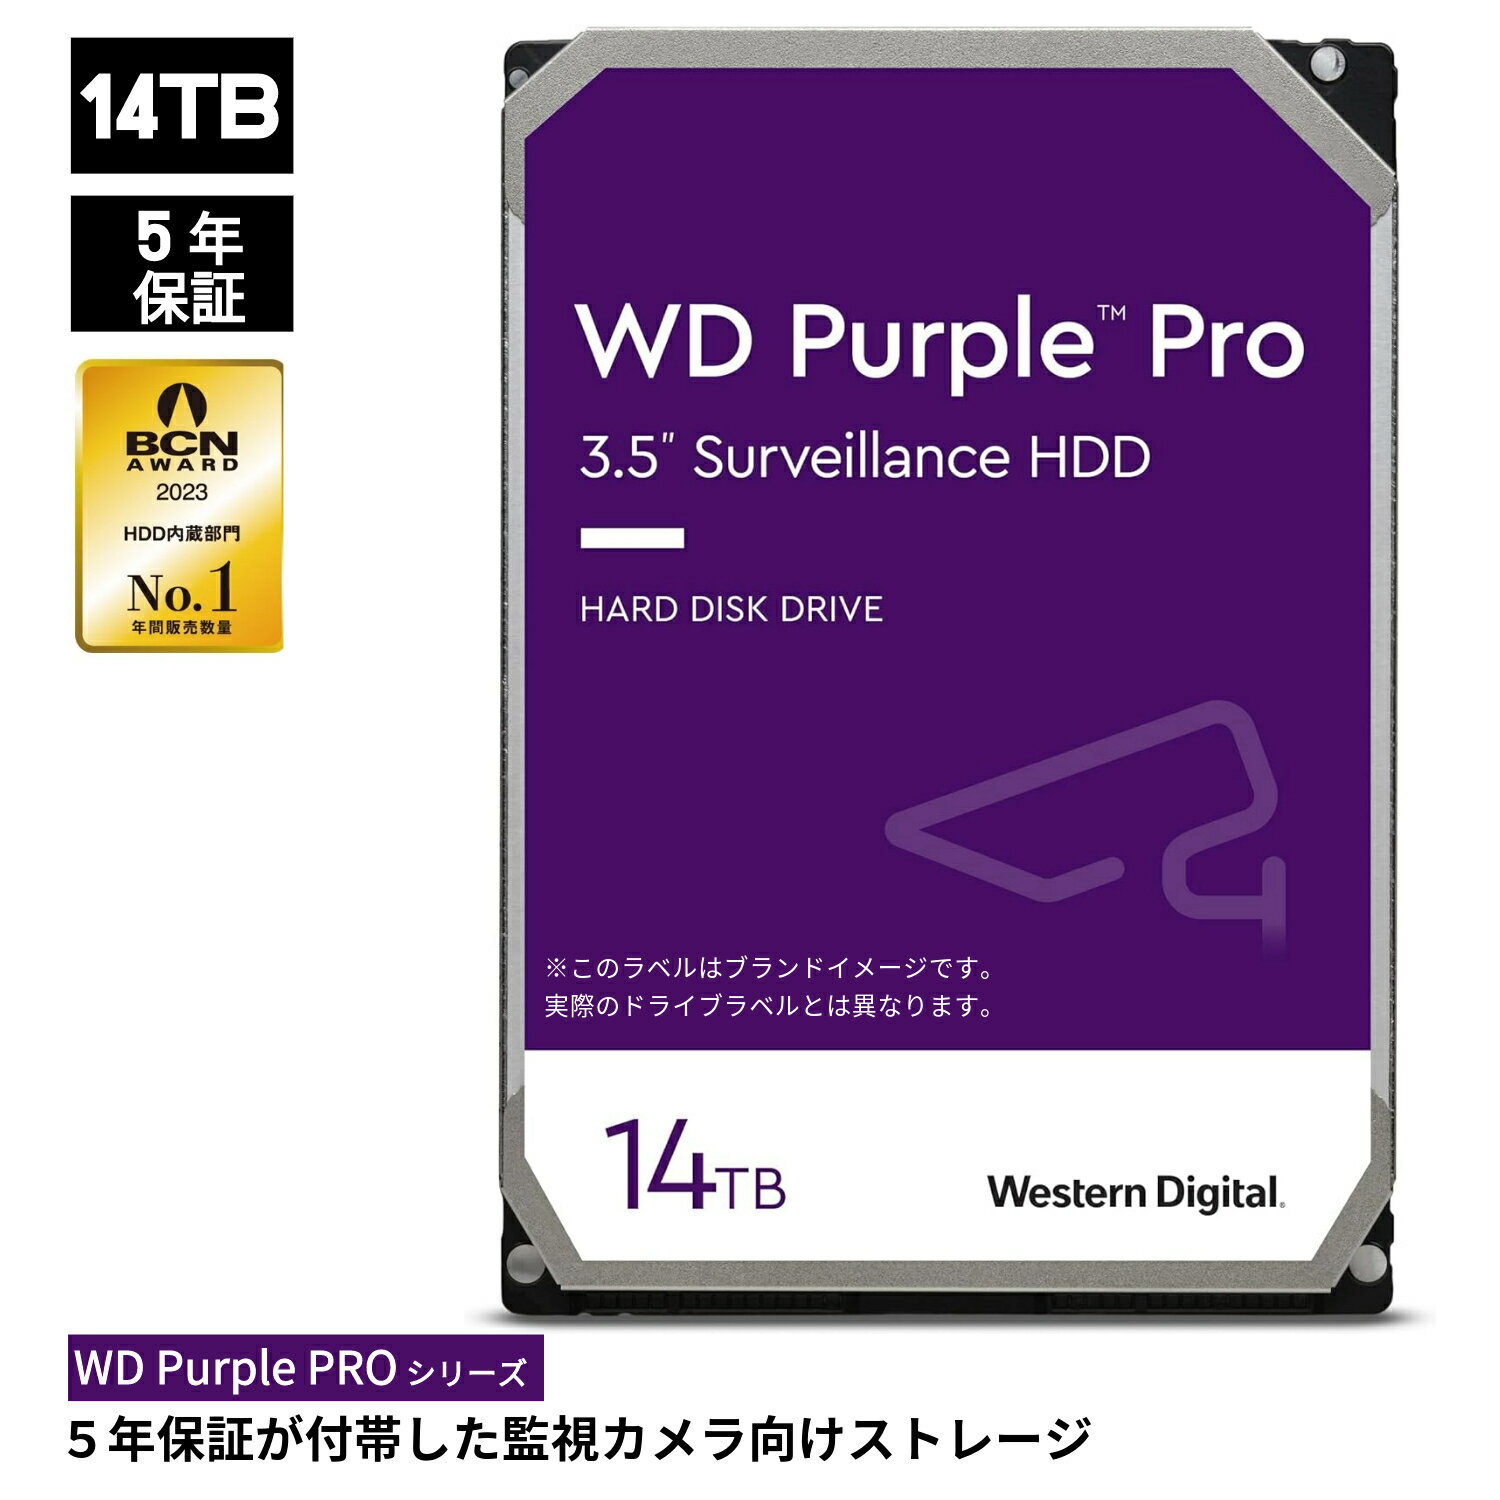 【国内正規流通品】Western Digital ウエスタンデジタル 内蔵 HDD 14TB WD Purple Pro 監視システム 3.5インチ WD142PURP 内蔵hdd 5年保証 パソコン 監視カメラ カメラ NVR 24時間 365日 信頼性 高耐久 耐久性 ハードディスクドライブ 省電力 PCパーツ